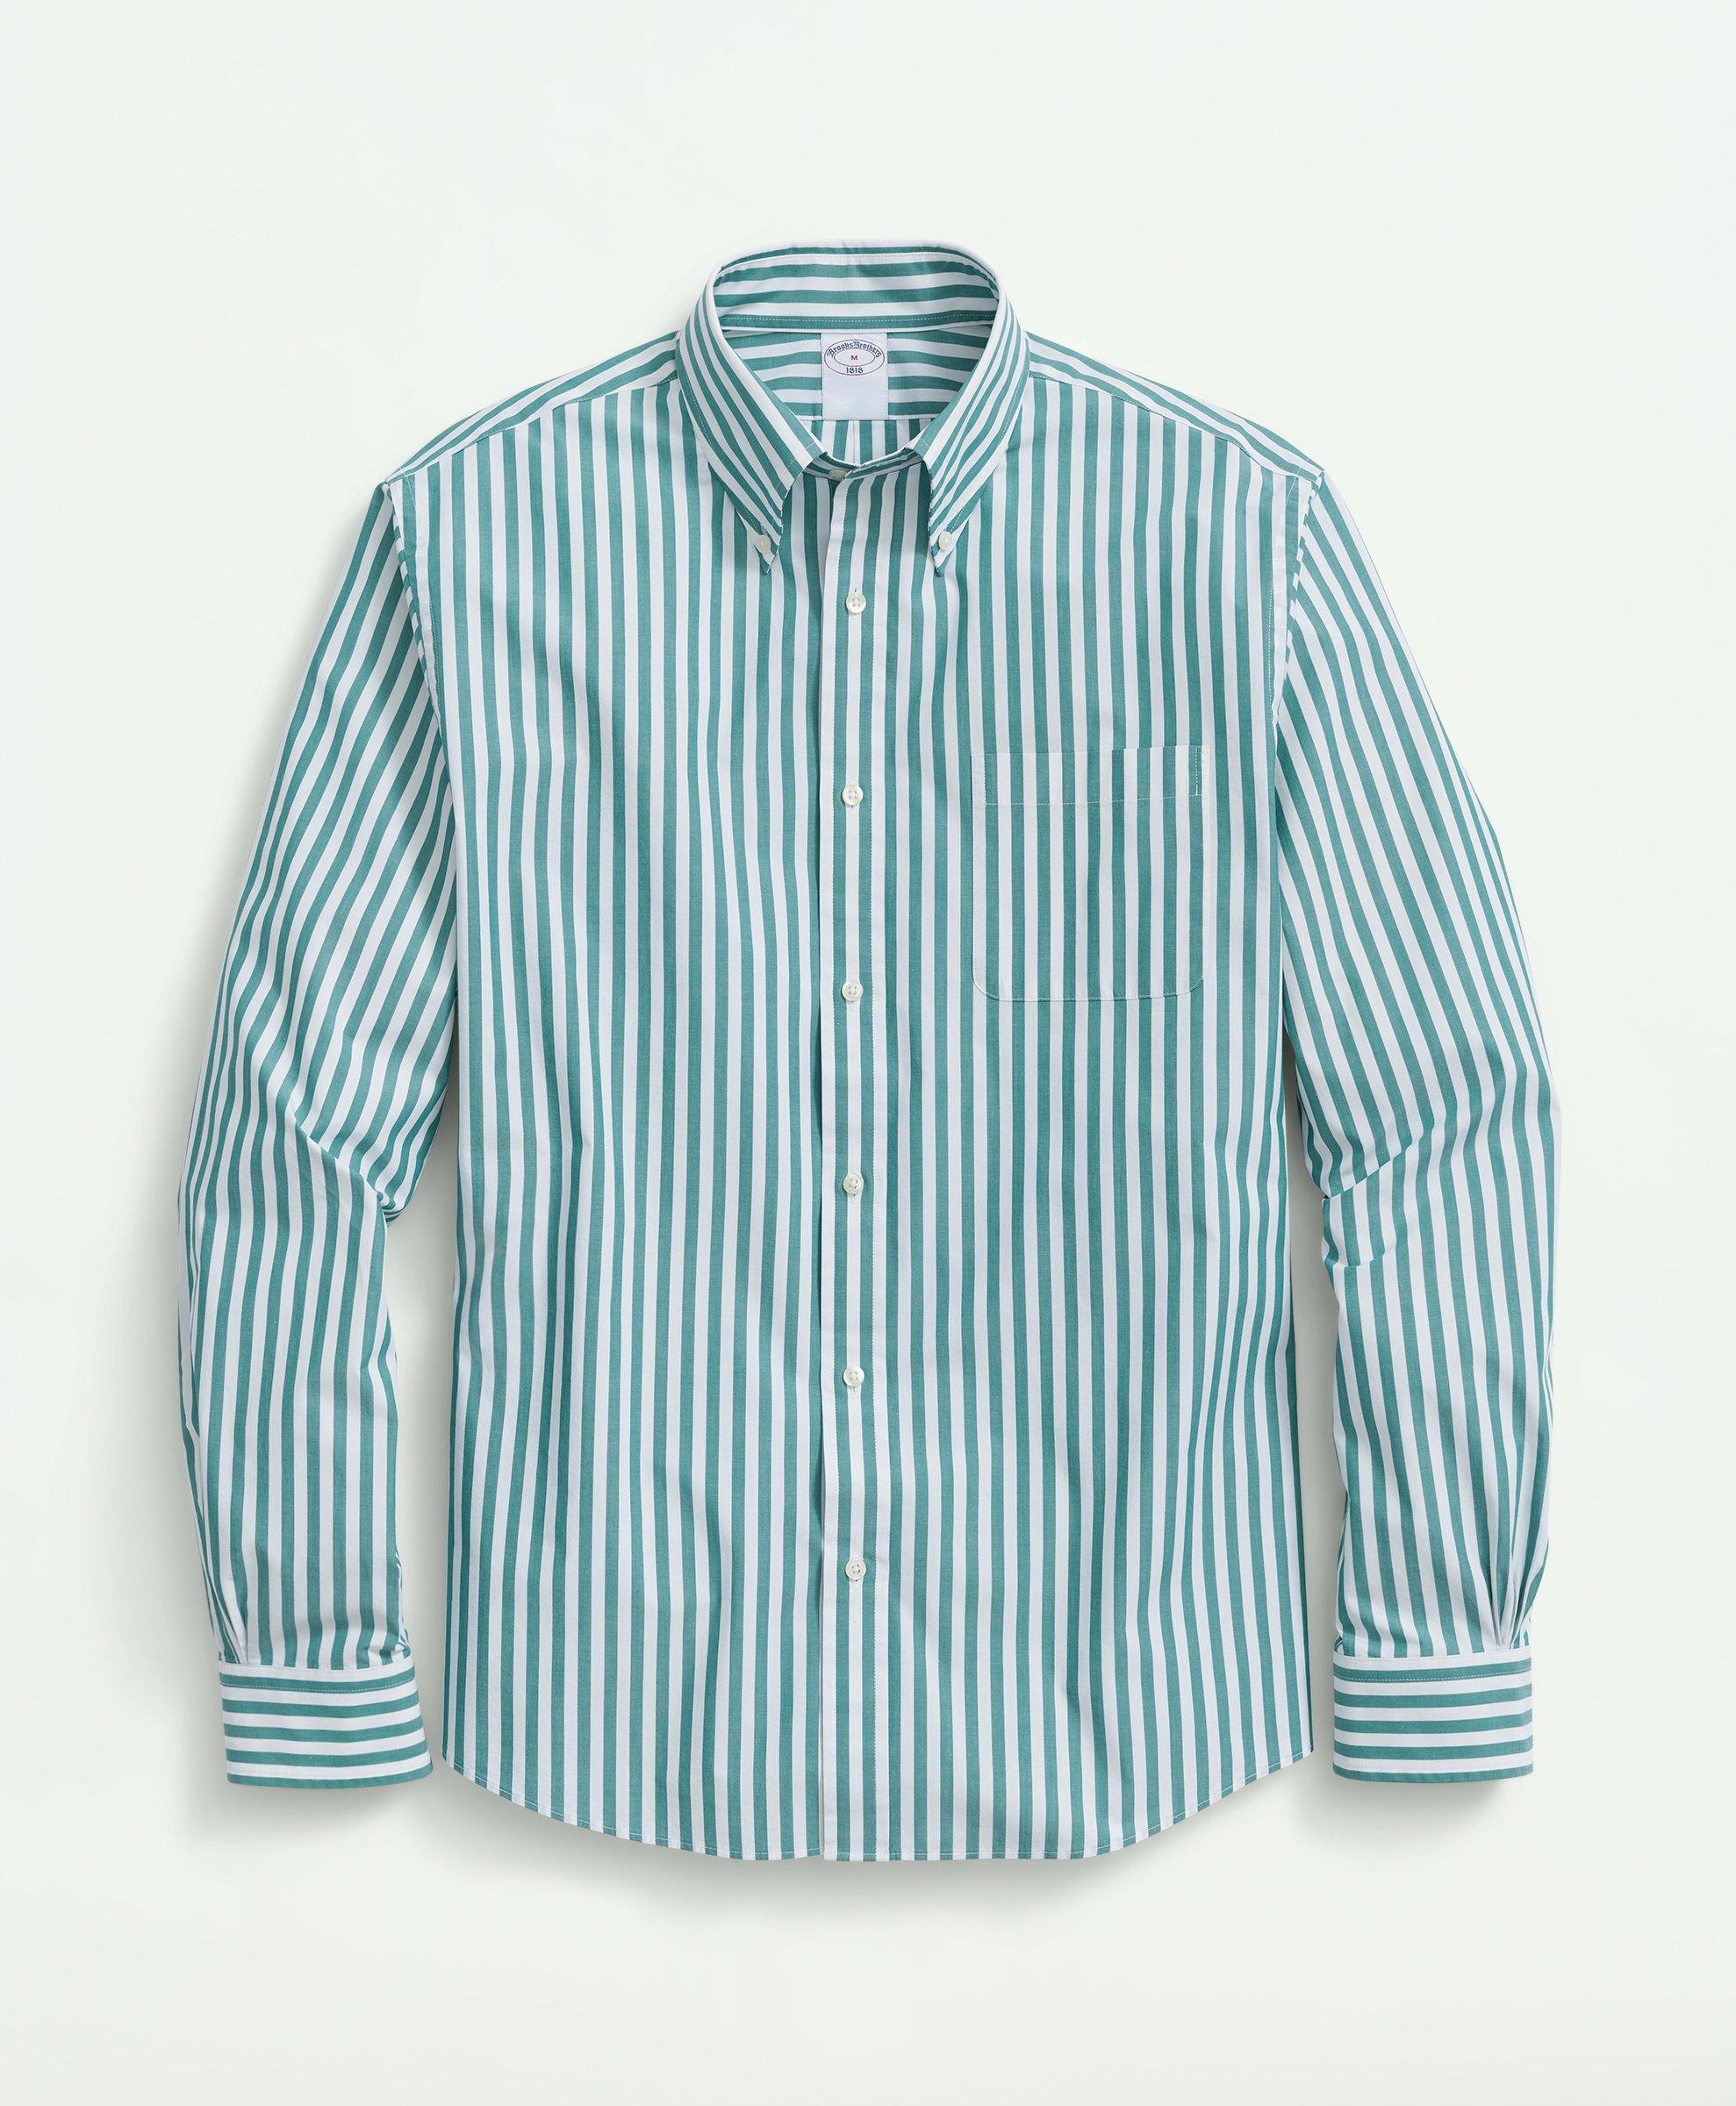 Brooks Brothers Big & Tall Friday Shirt, Poplin Butcher Striped | Green | Size 3x Tall